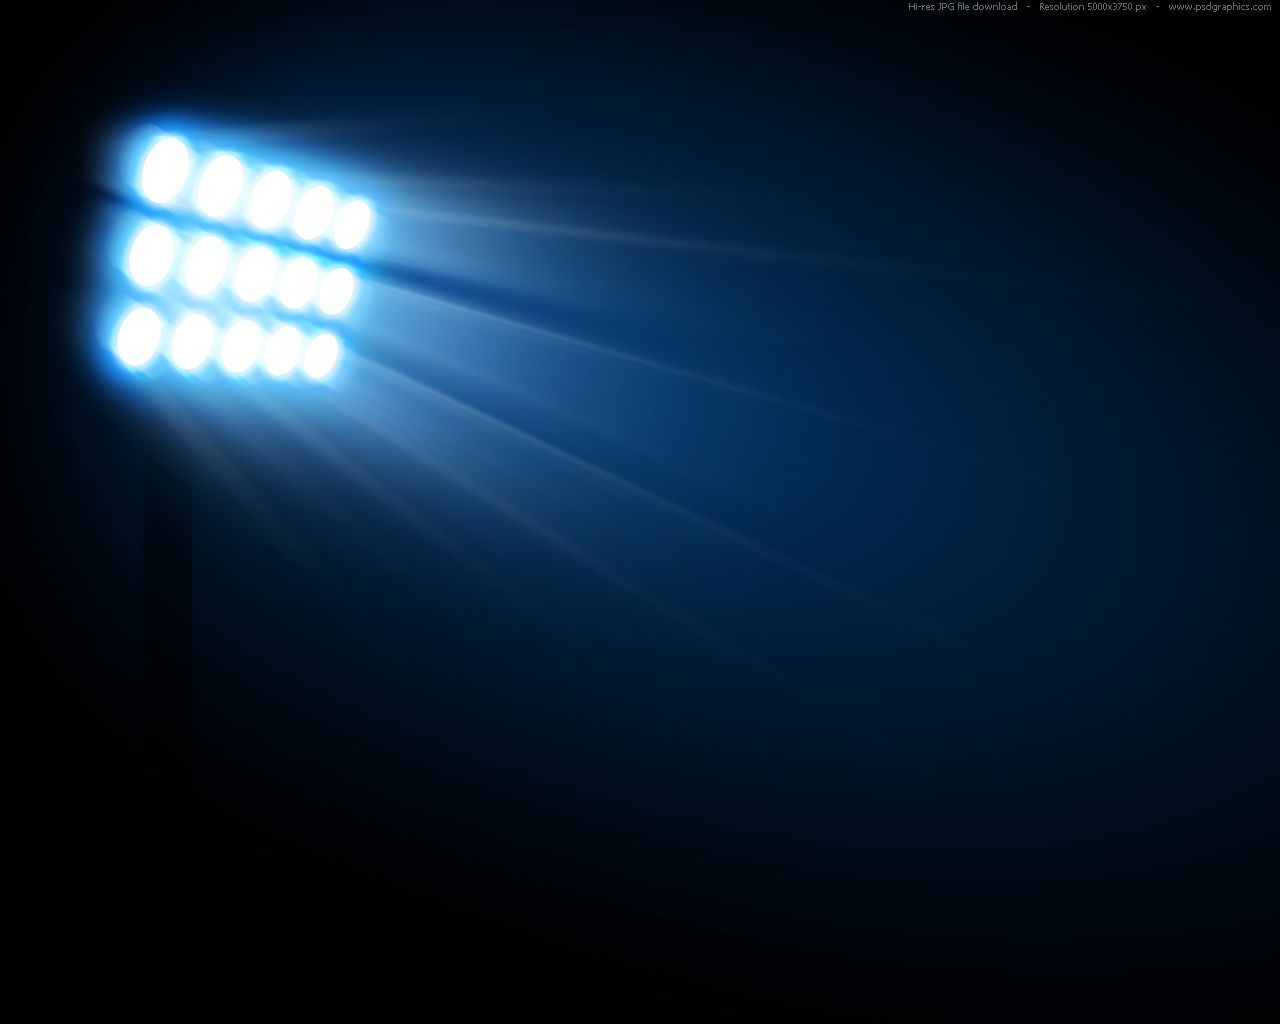 Single stadium light background. Stadium lighting, Background, Photo background image